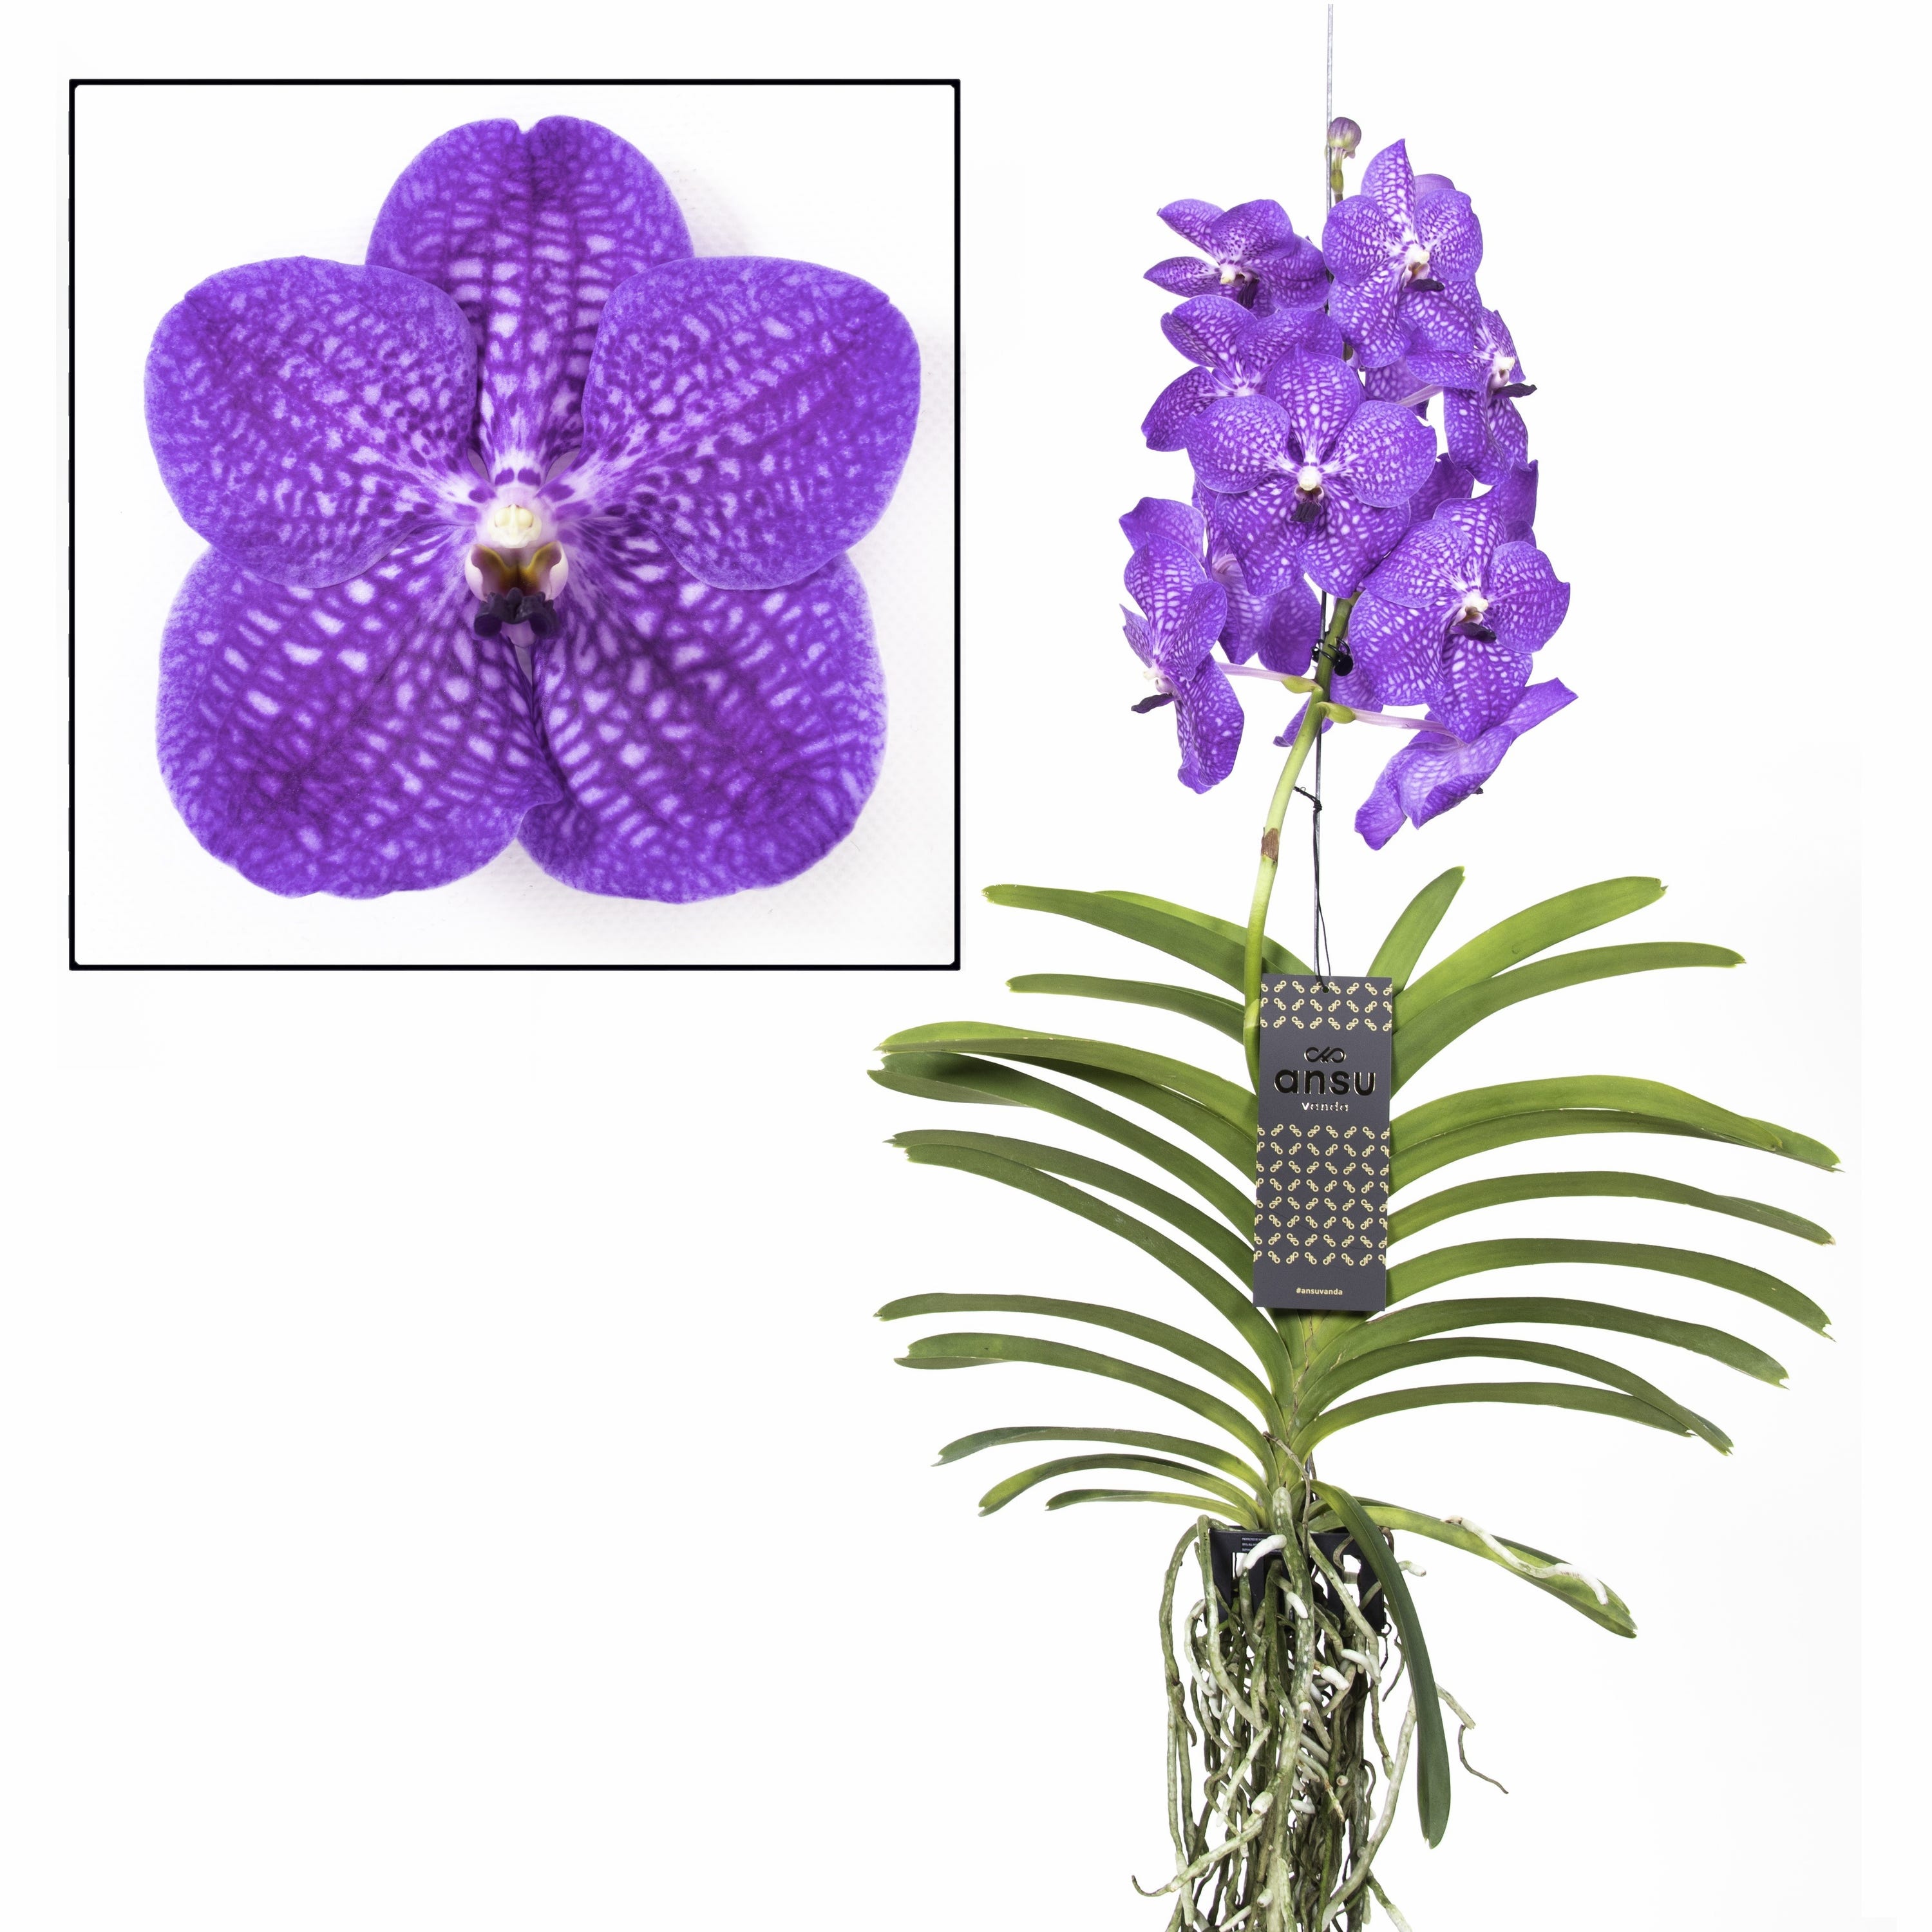 Choix orchidée : toutes les clés pour choisir une orchidée